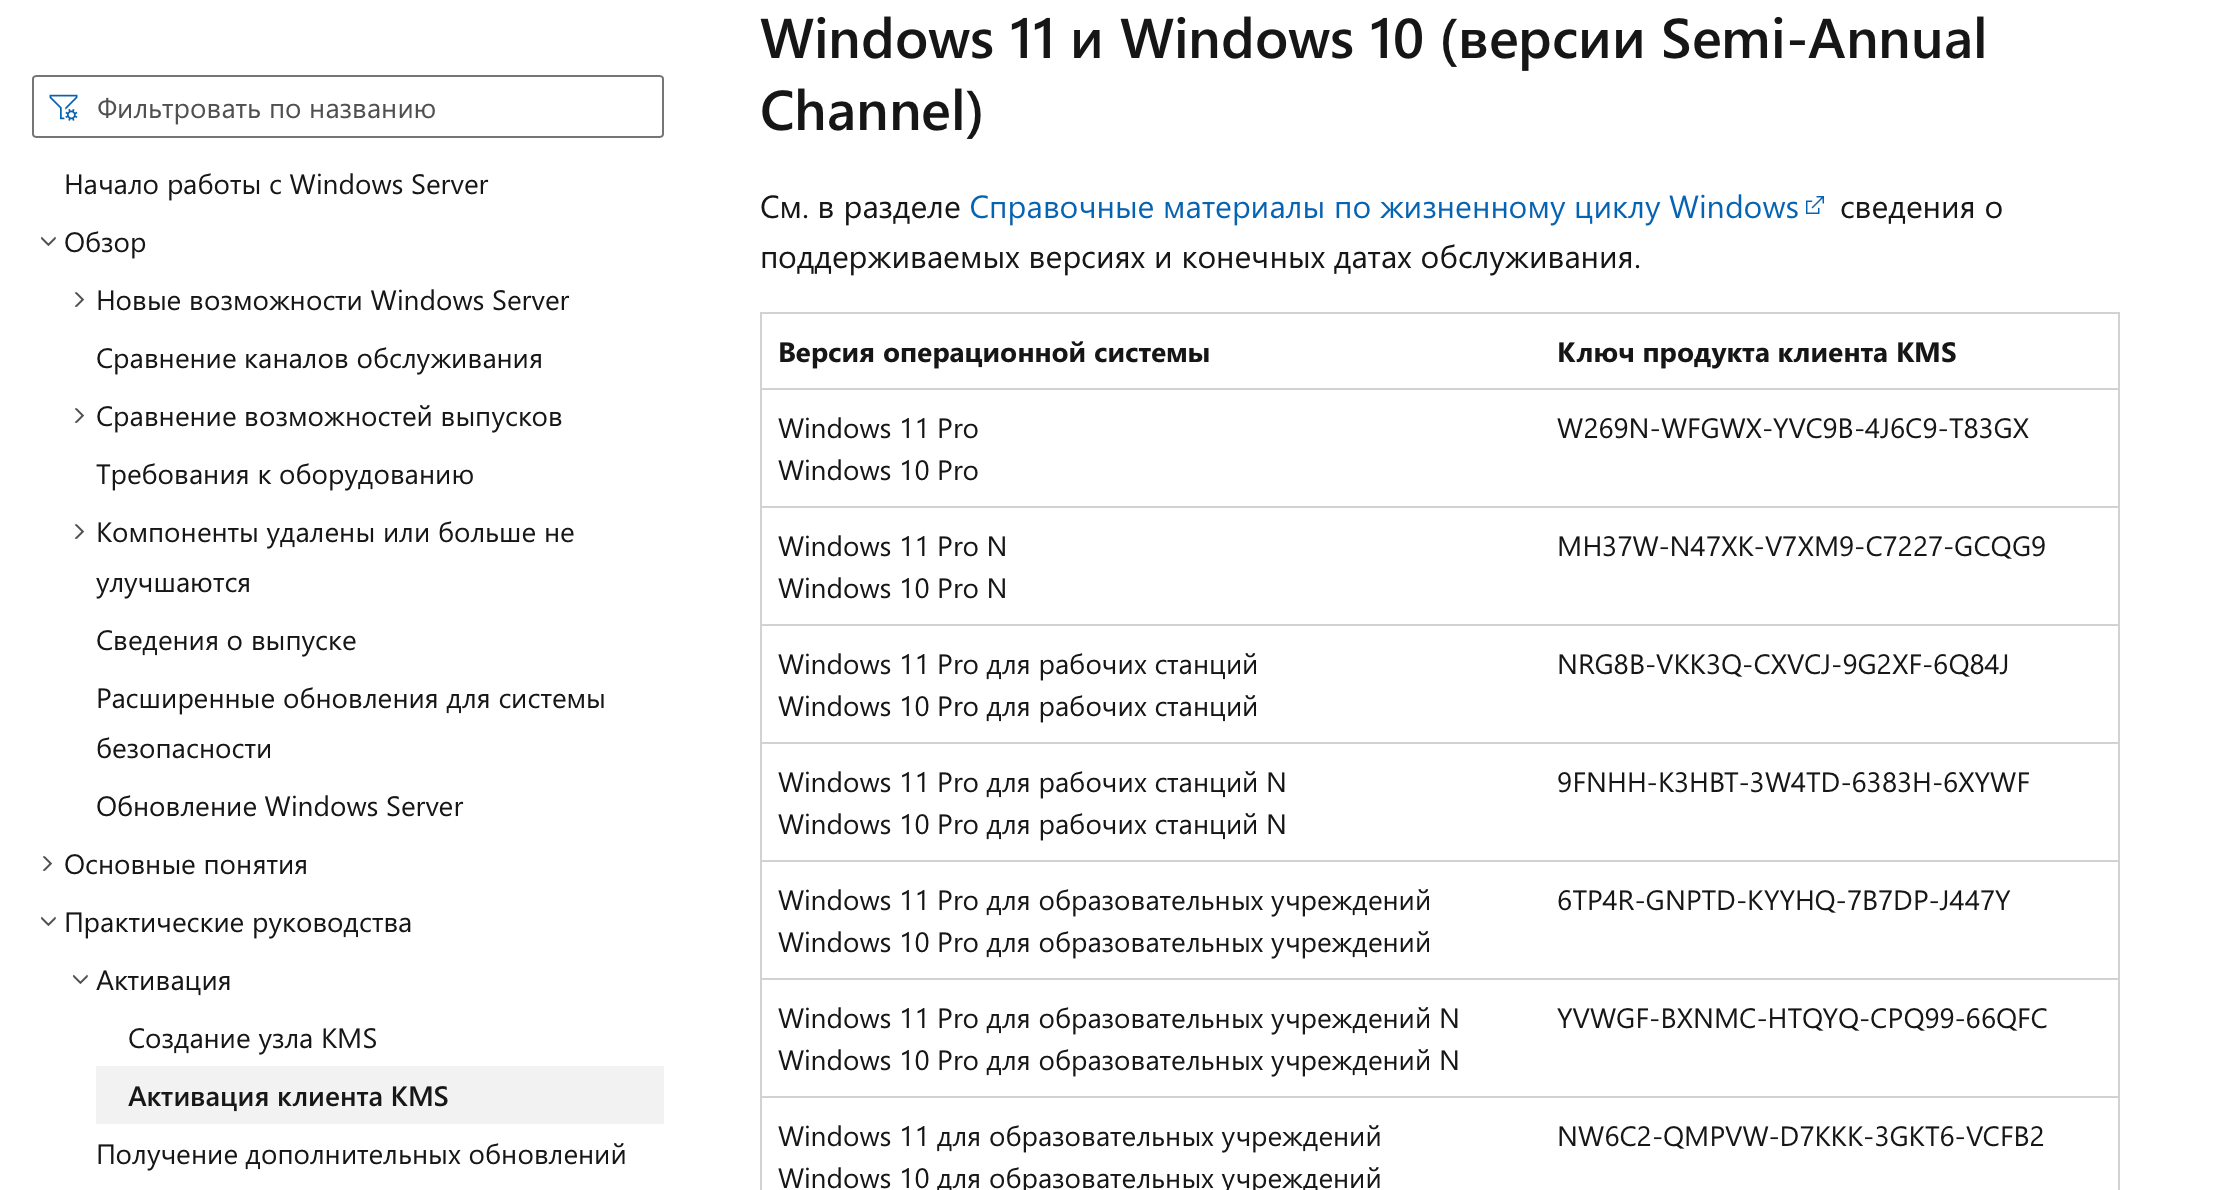 Ключи активации для всех версий Windows на сайте Microsoft